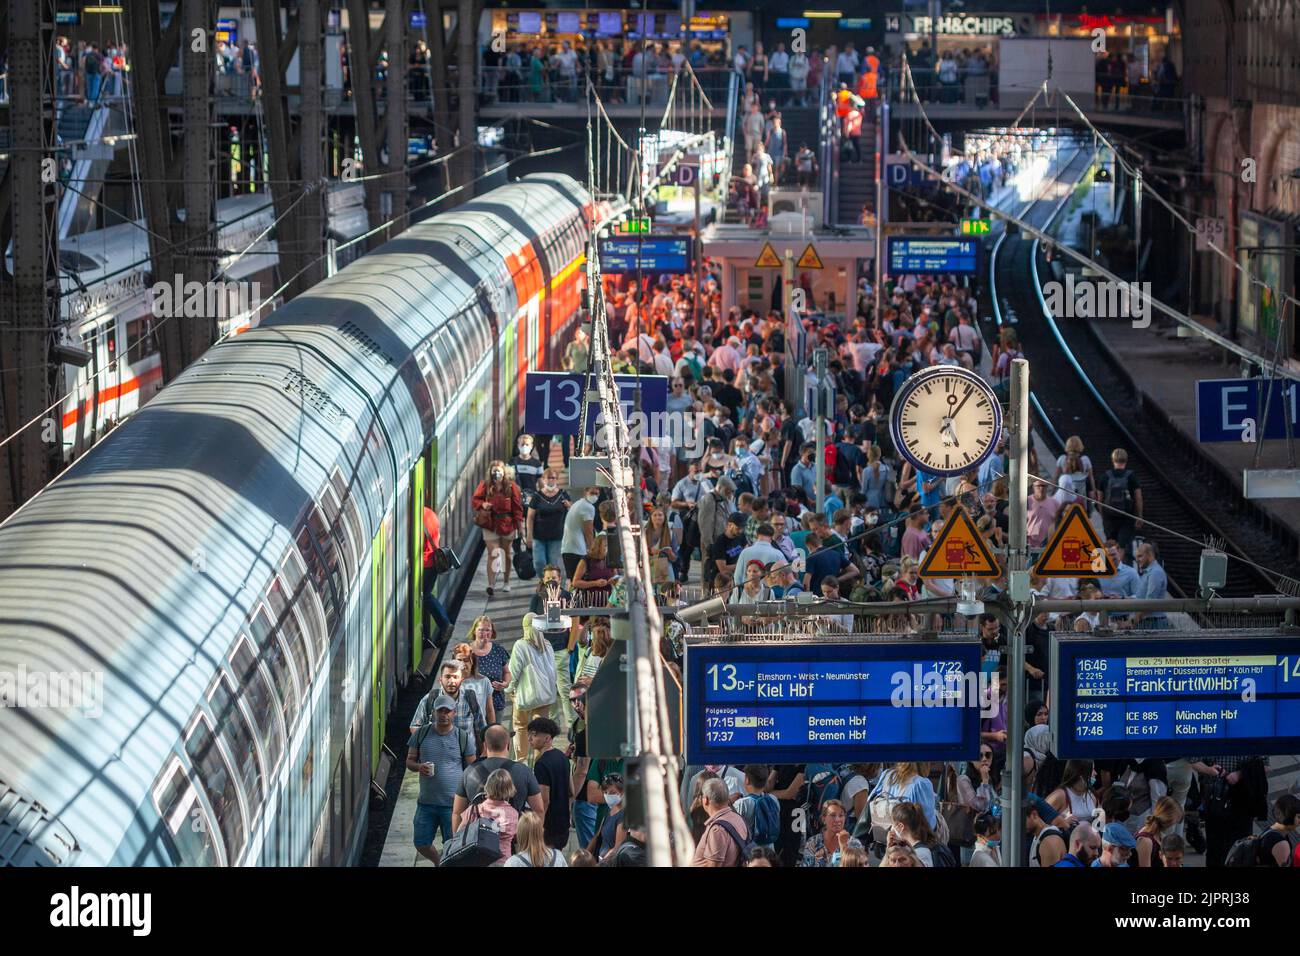 Viele Menschen stehen überfüllt auf einem Bahnsteig vor einem lokalen Zug, Chaos im Nahverkehr, 9 Euro Ticket, Hamburger Hauptbahnhof Stockfoto